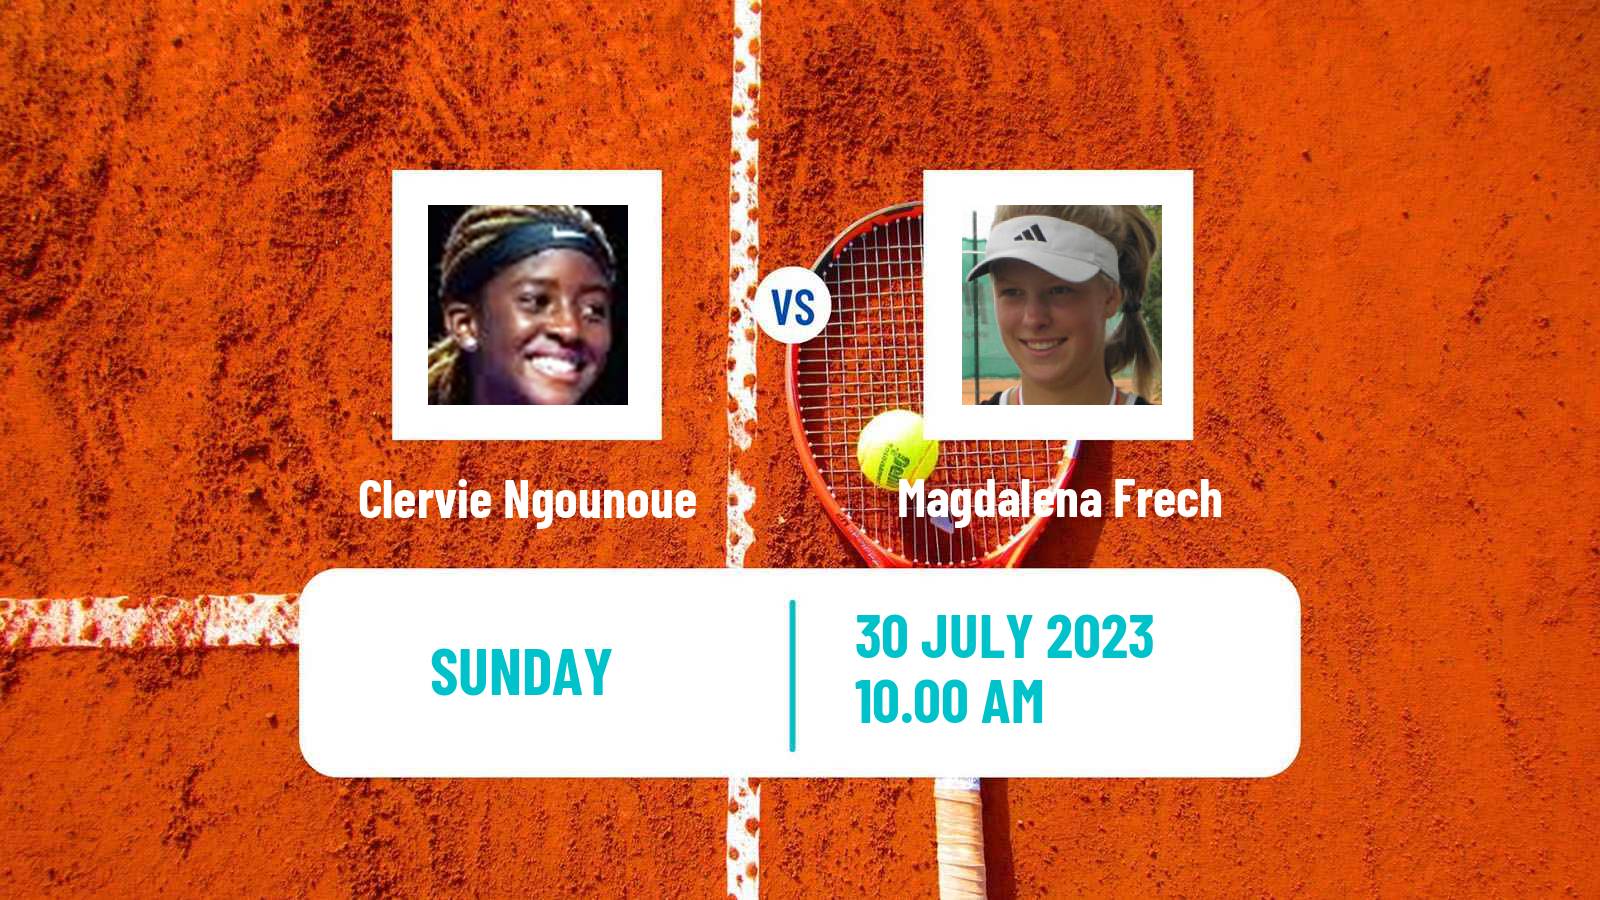 Tennis WTA Washington Clervie Ngounoue - Magdalena Frech